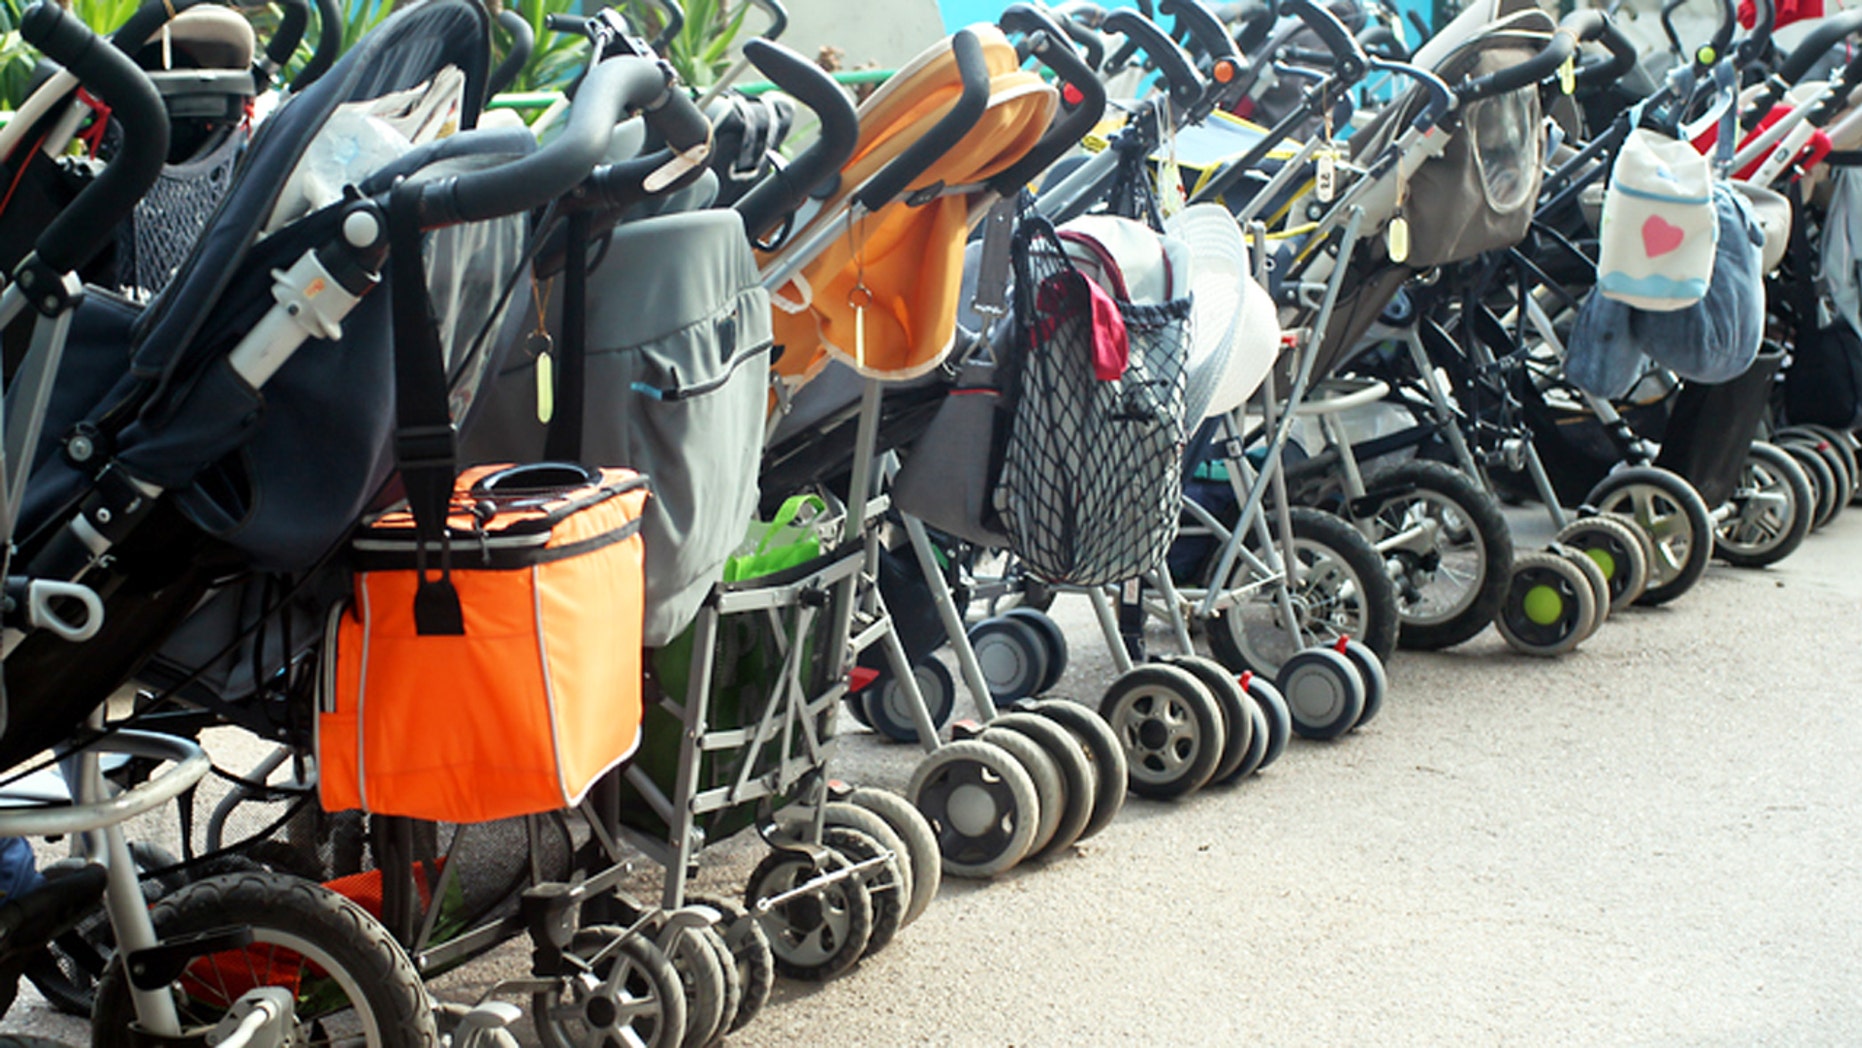 stroller stolen at disneyland